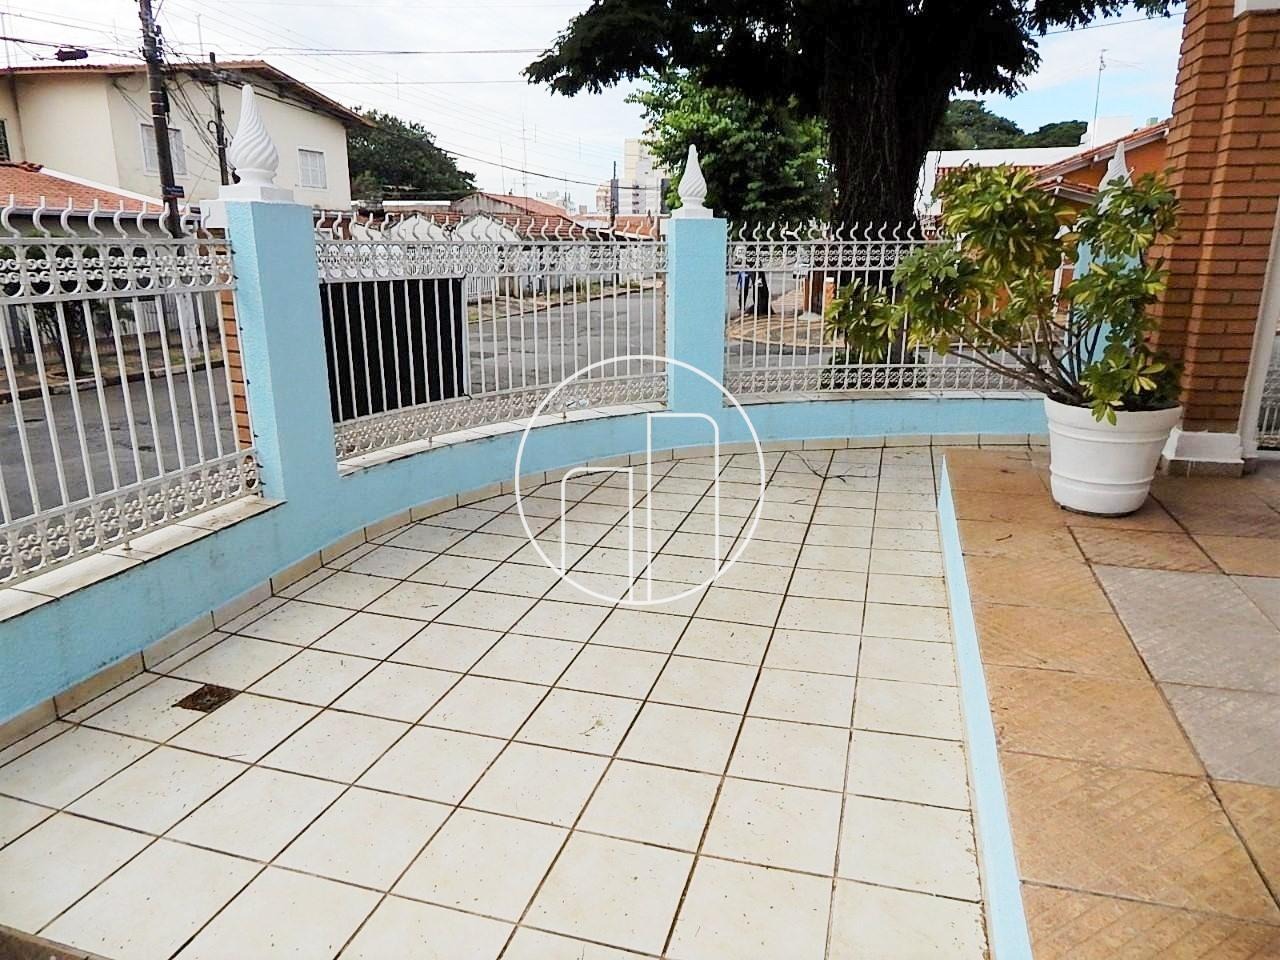 Piccoloto -Casa à venda no Vila Nova em Campinas